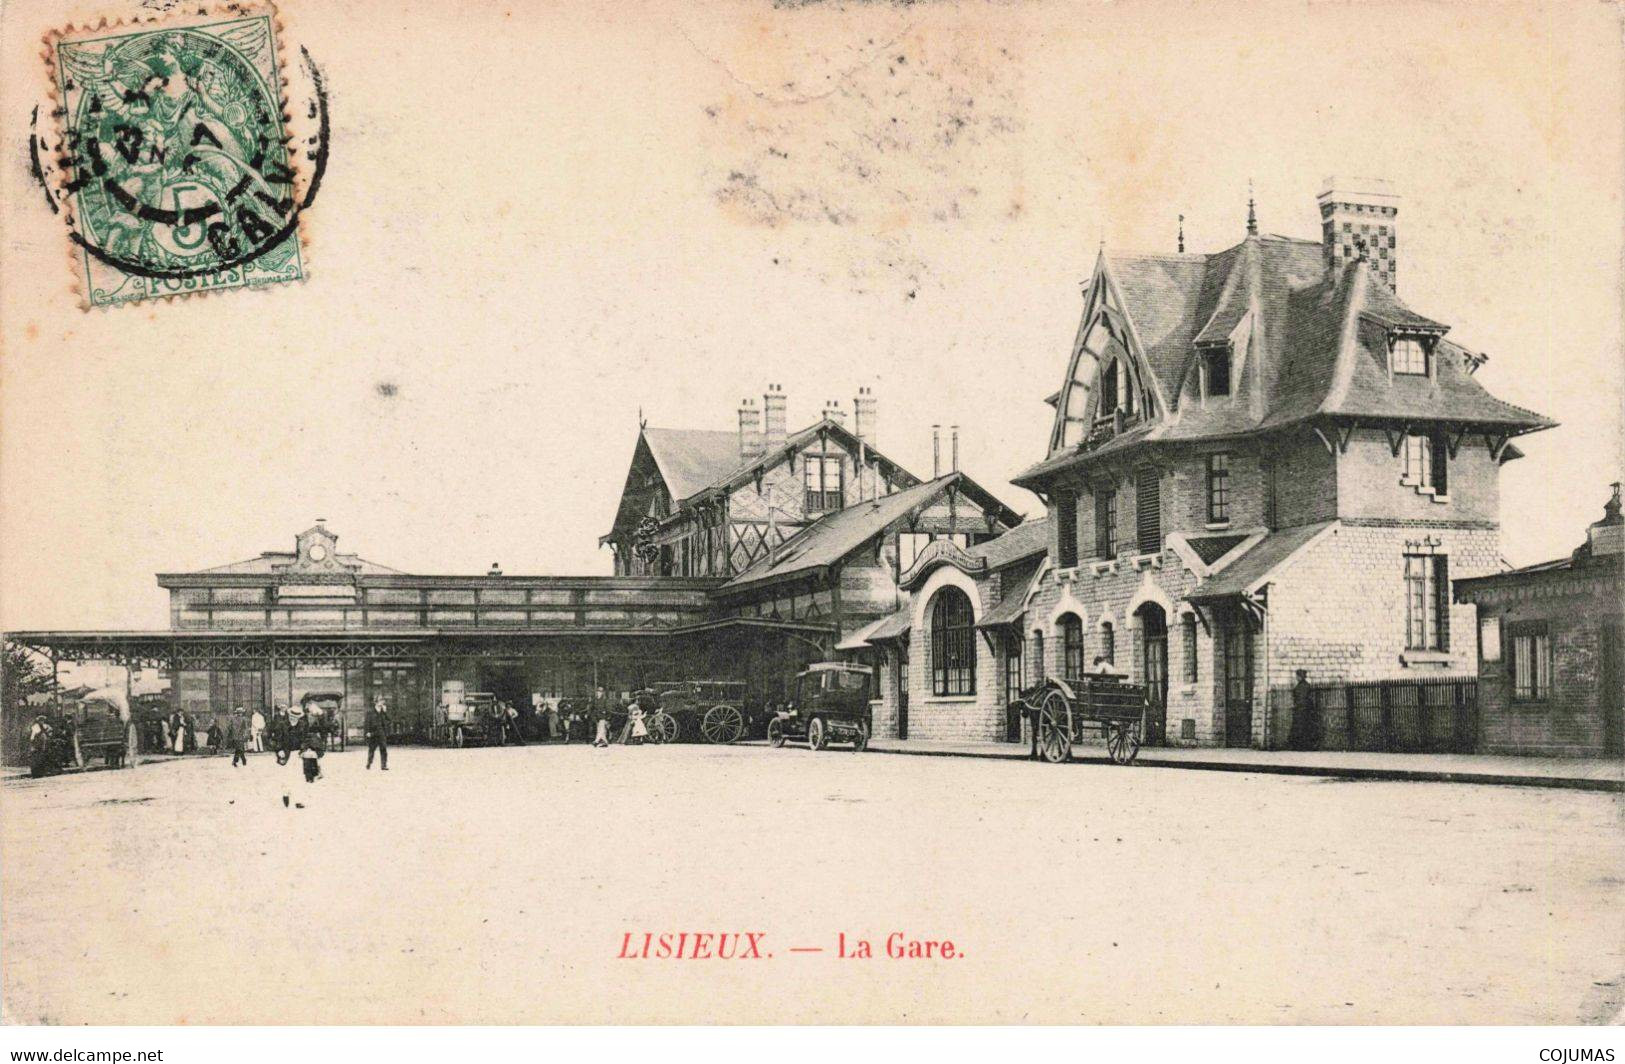 14 - LISIEUX - S01723 - La Gare - Automobiles - Attelage - Calèche - L1 - Lisieux